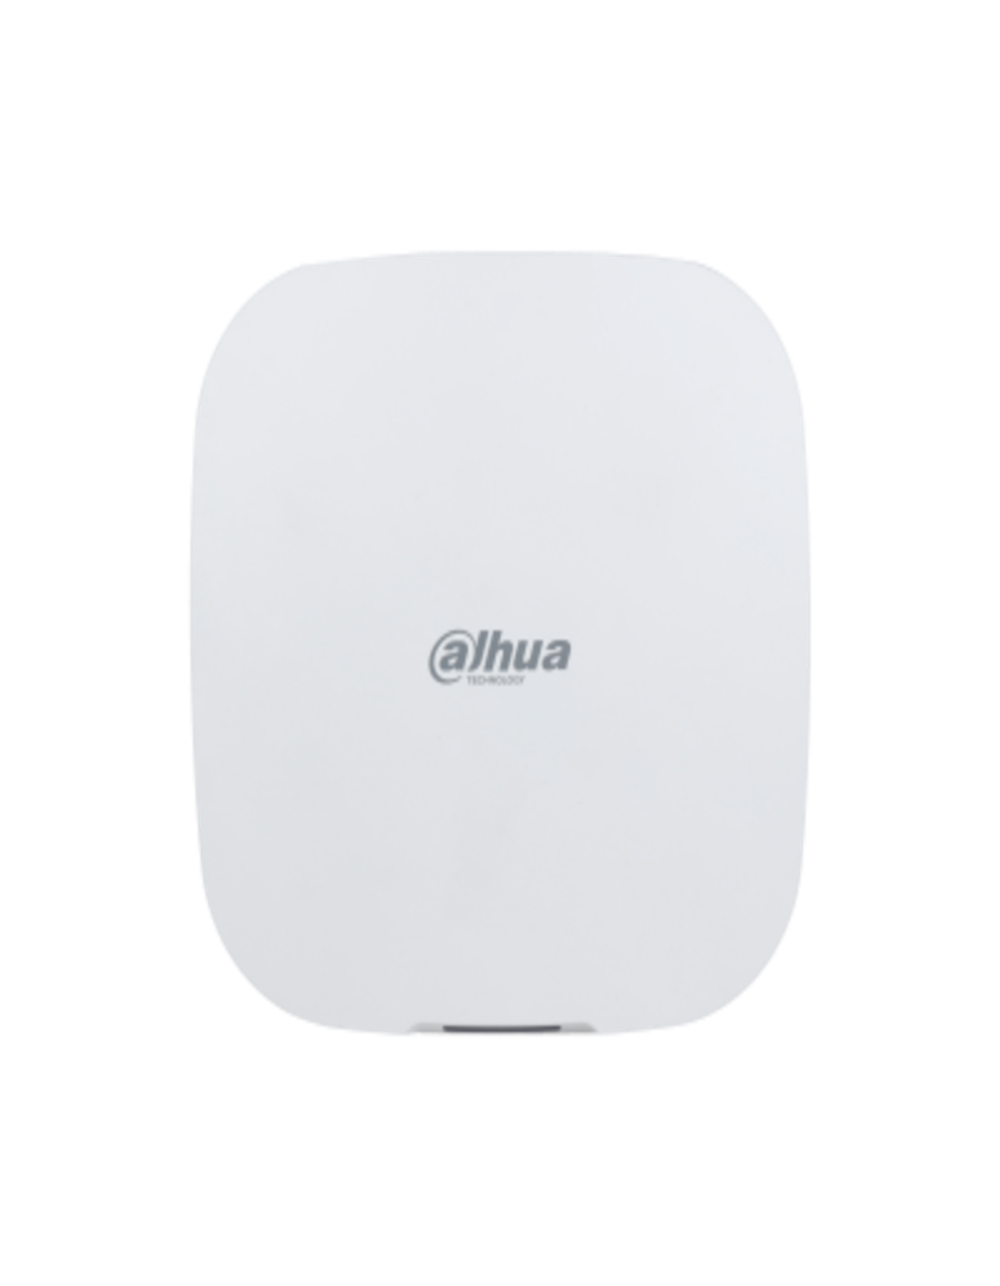 Контроллер охранной сигнализации Dahua Air Shield DHI-ARC3000H-FW2(868) (Ethernet, Wi-Fi 2.4Ггц/5Ггц, 4G/3G/GPRS)